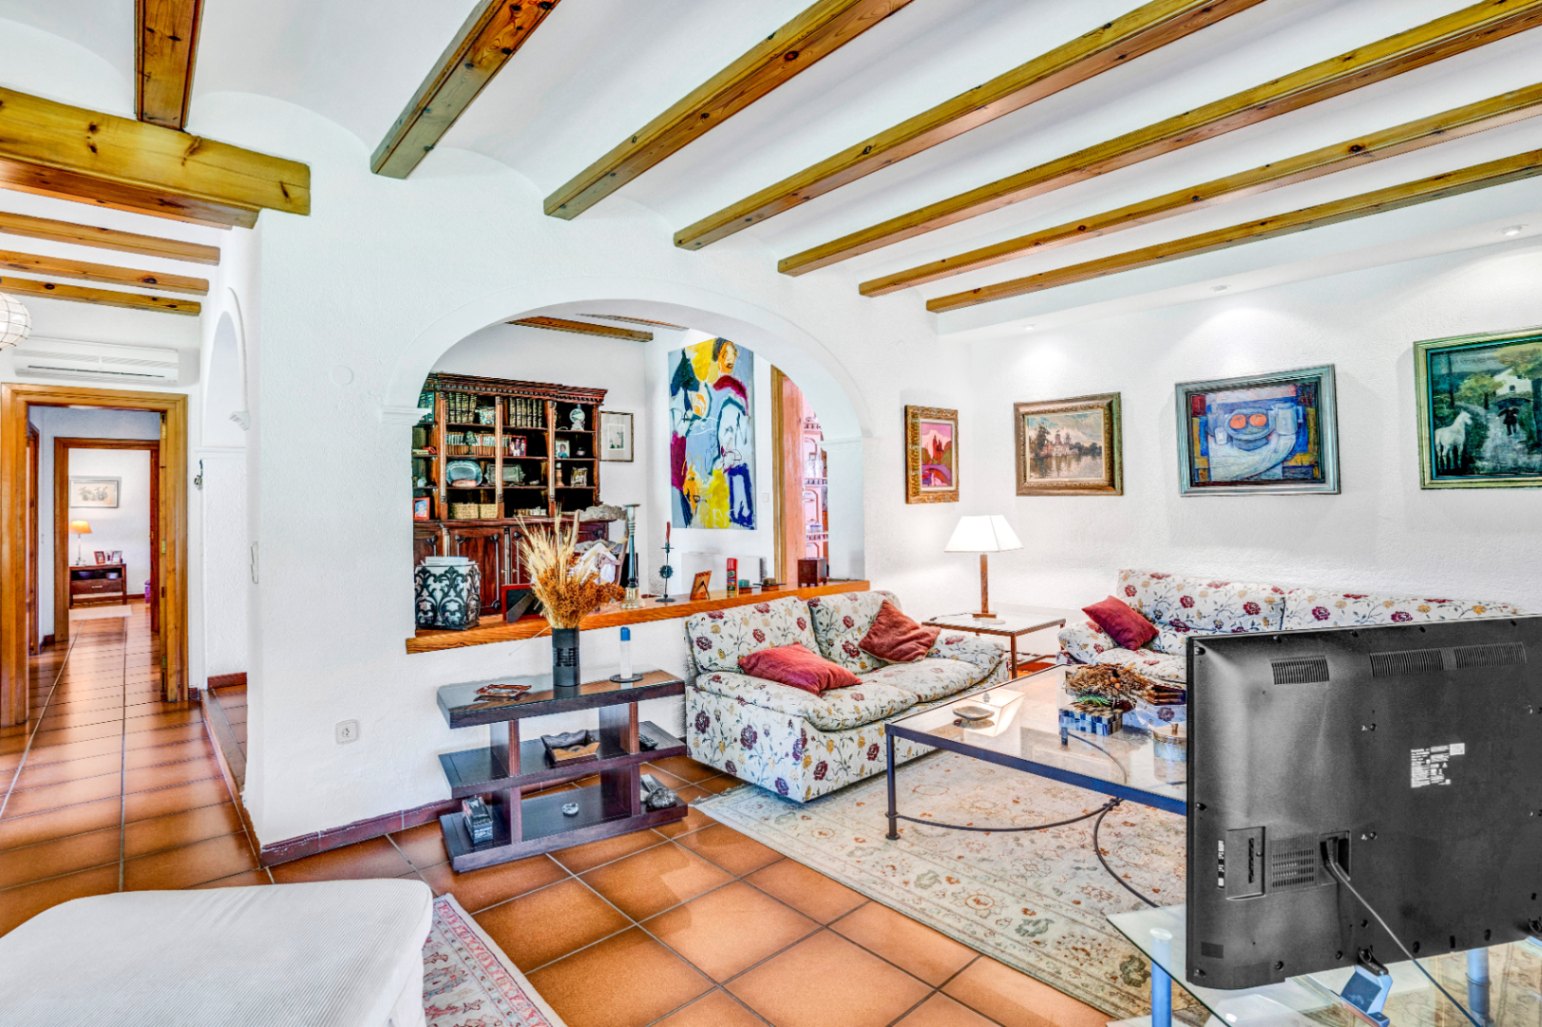 Villa zu verkaufen in Tosalet de Javea - Großes Grundstück von 1950m2 - 5 Schlafzimmer und alle auf einer Etage